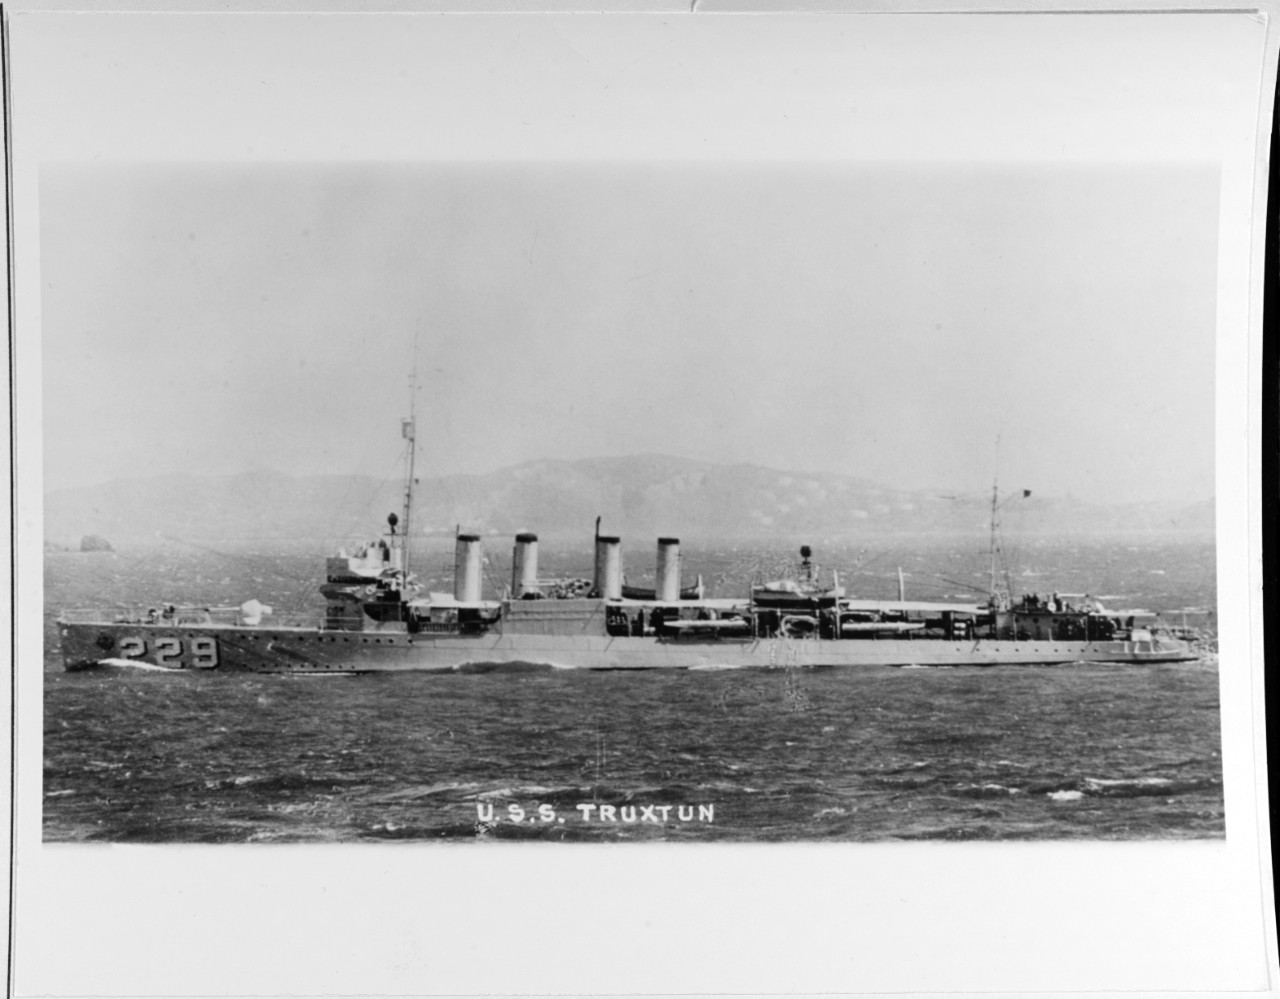 USS TRUXTUN (DD-229)